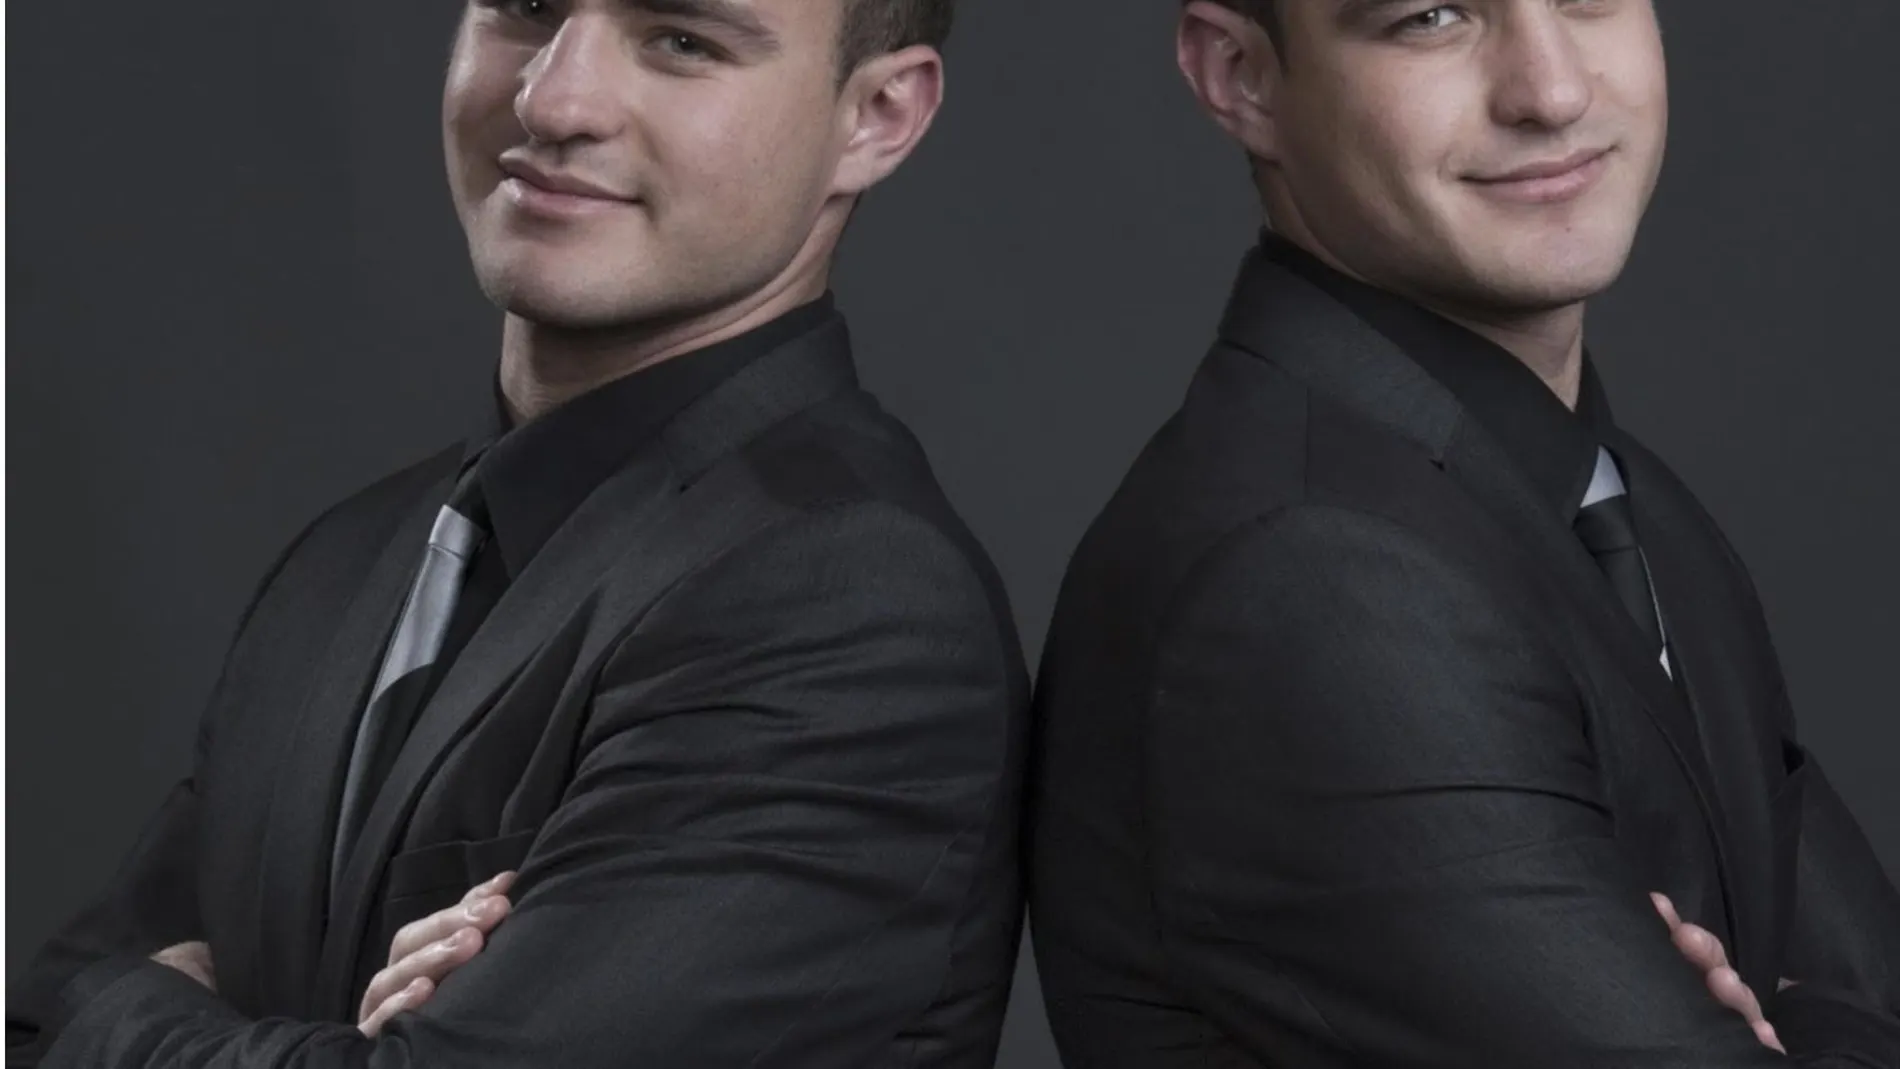 Los gemelos clarinetistas Daniel y Alexandre Gurfinkel